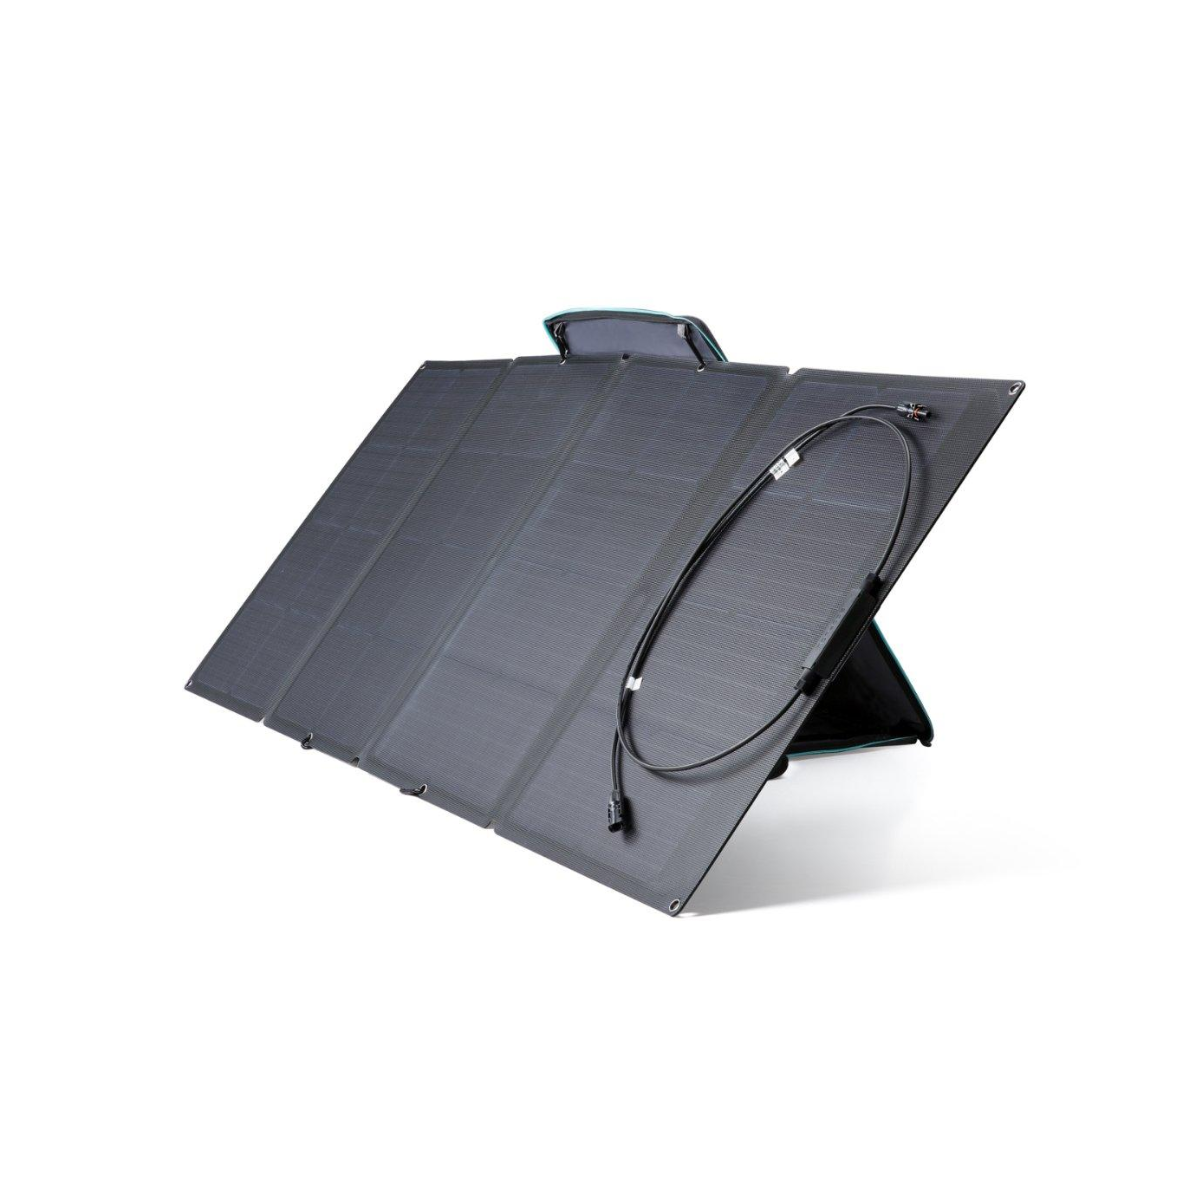 EcoFlow 160W 太阳能电池板